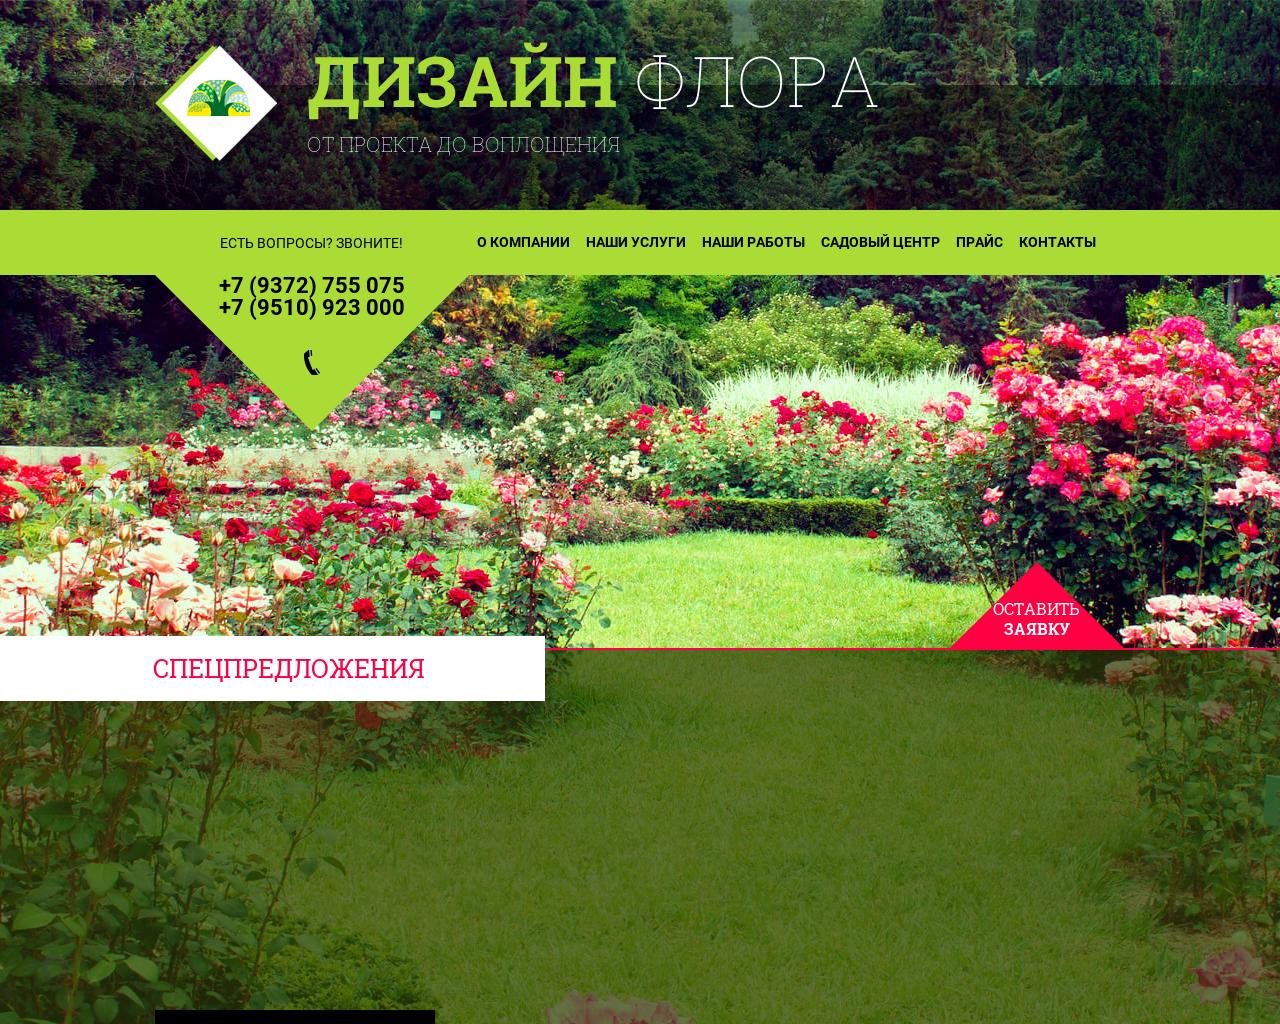 Изображение сайта dsflora.ru в разрешении 1280x1024